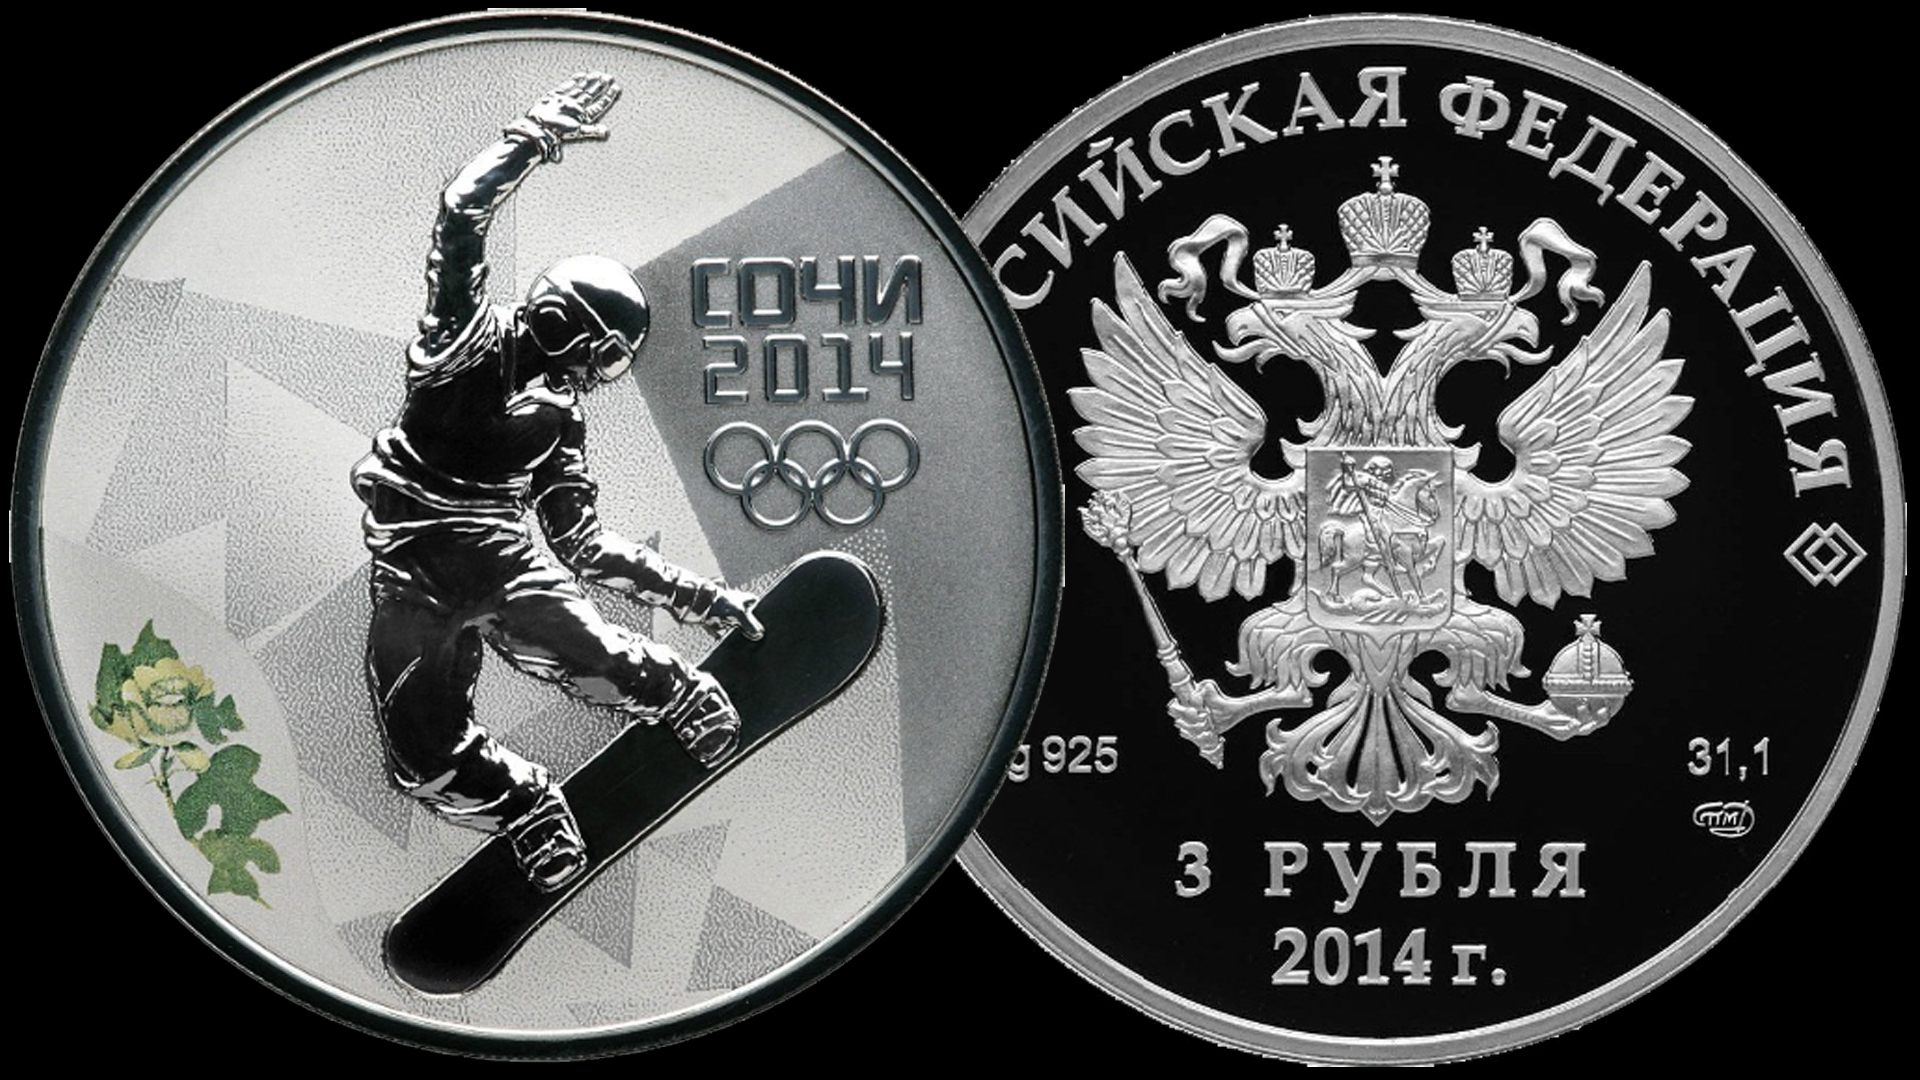 Серебряные монеты 3 рубля Сочи 2014 Второй выпуск 2012 года.